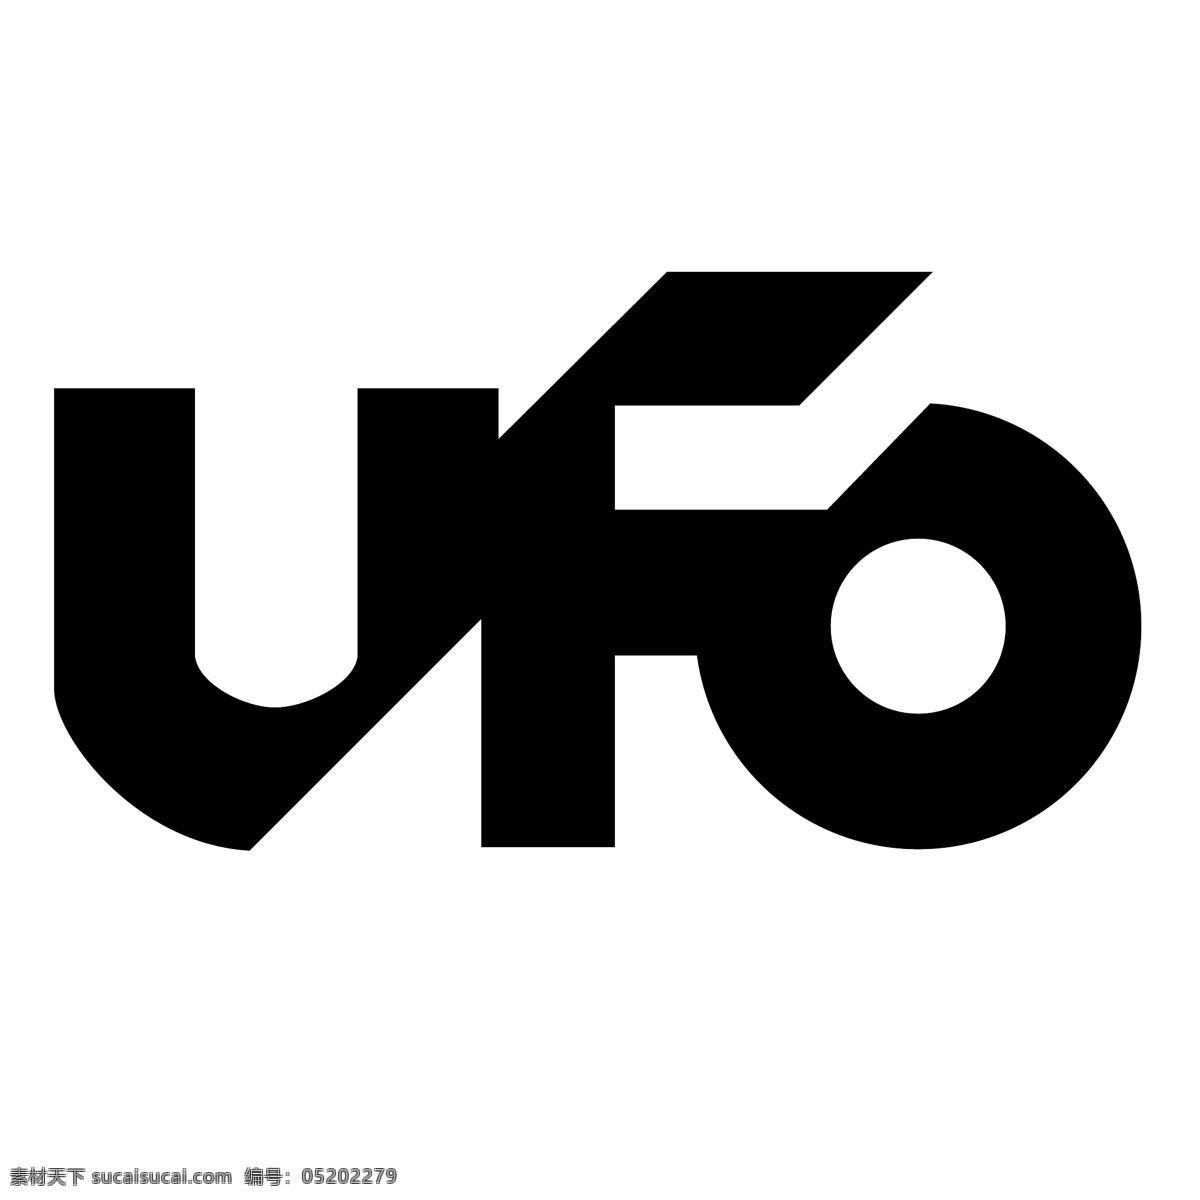 ufo 系统 免费 标识 psd源文件 logo设计